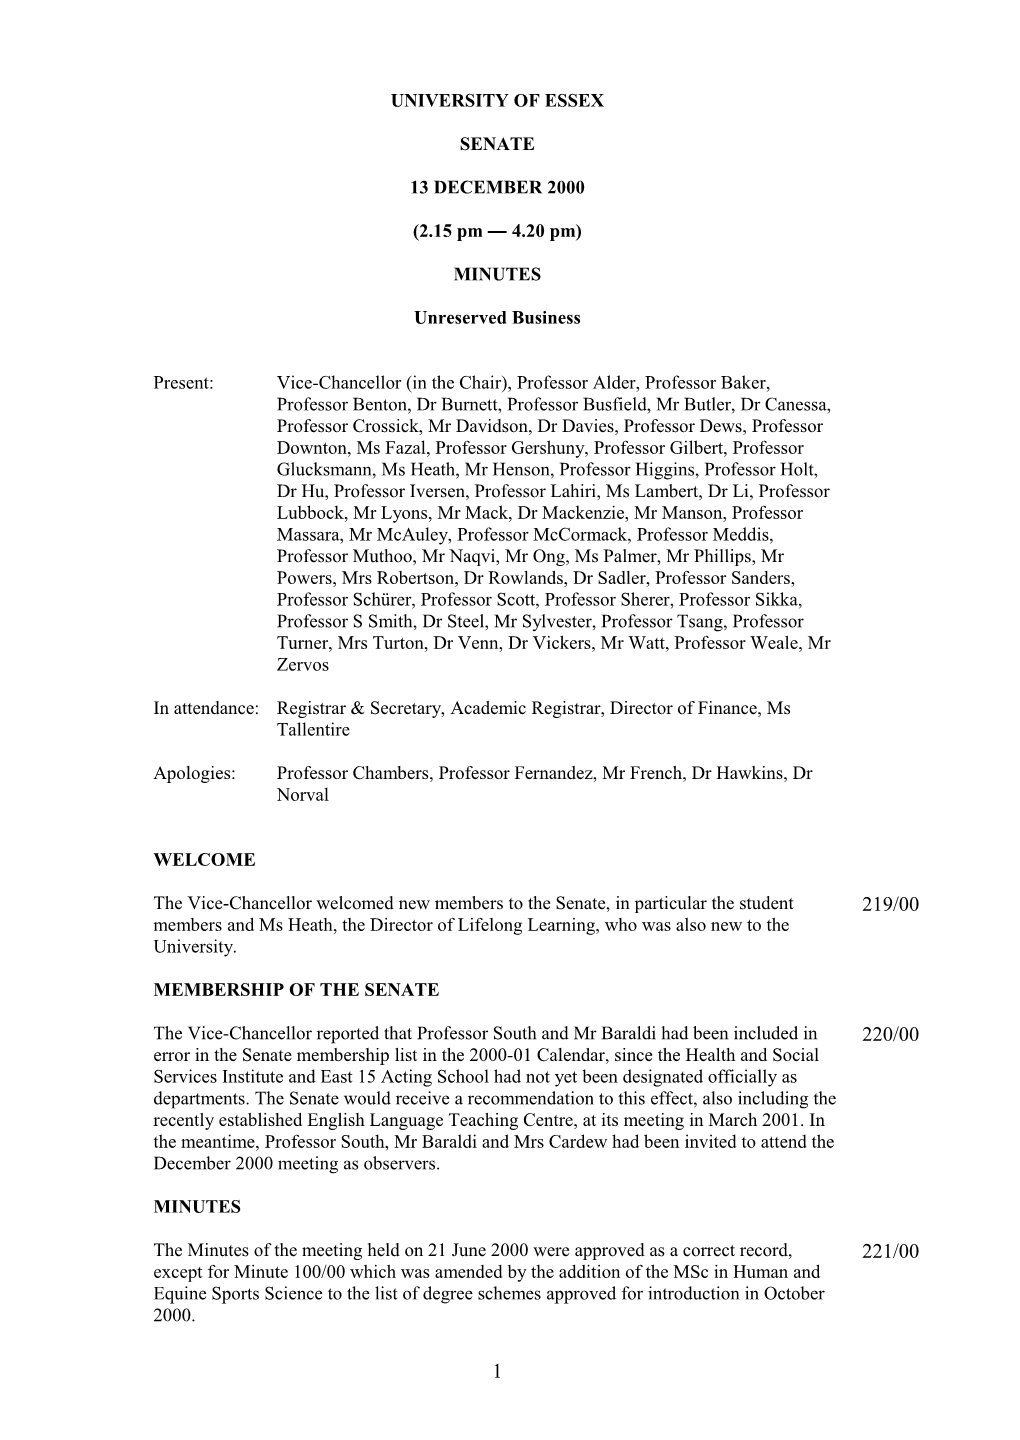 Senate Minutes December 2000- University of Essex